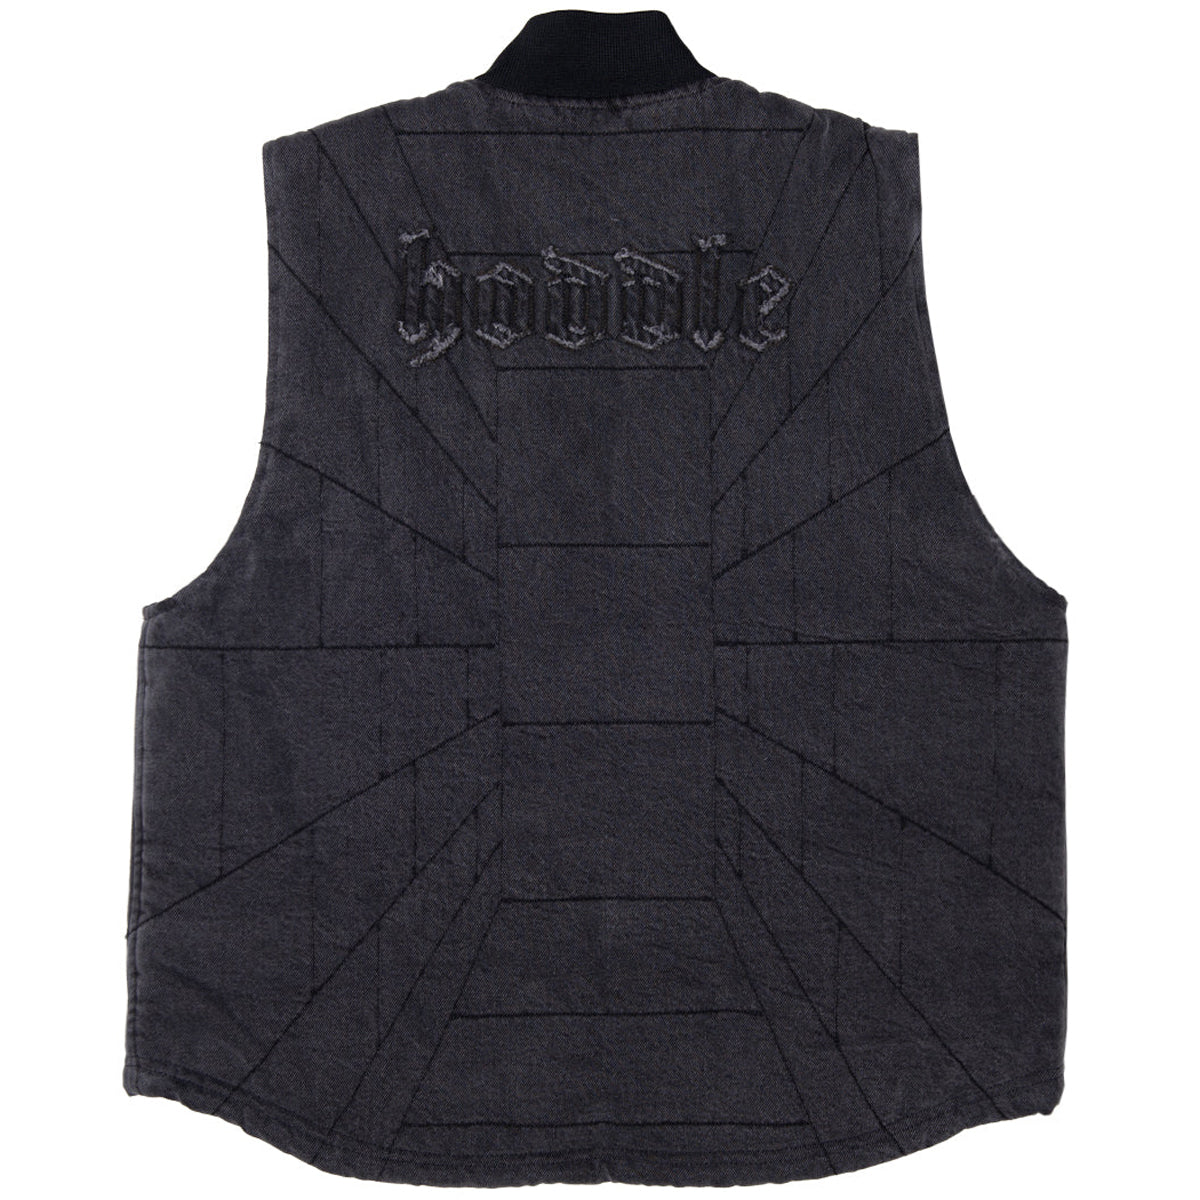 Hoddle Zip Up Carpenter Vest - Black Denim Wash image 2